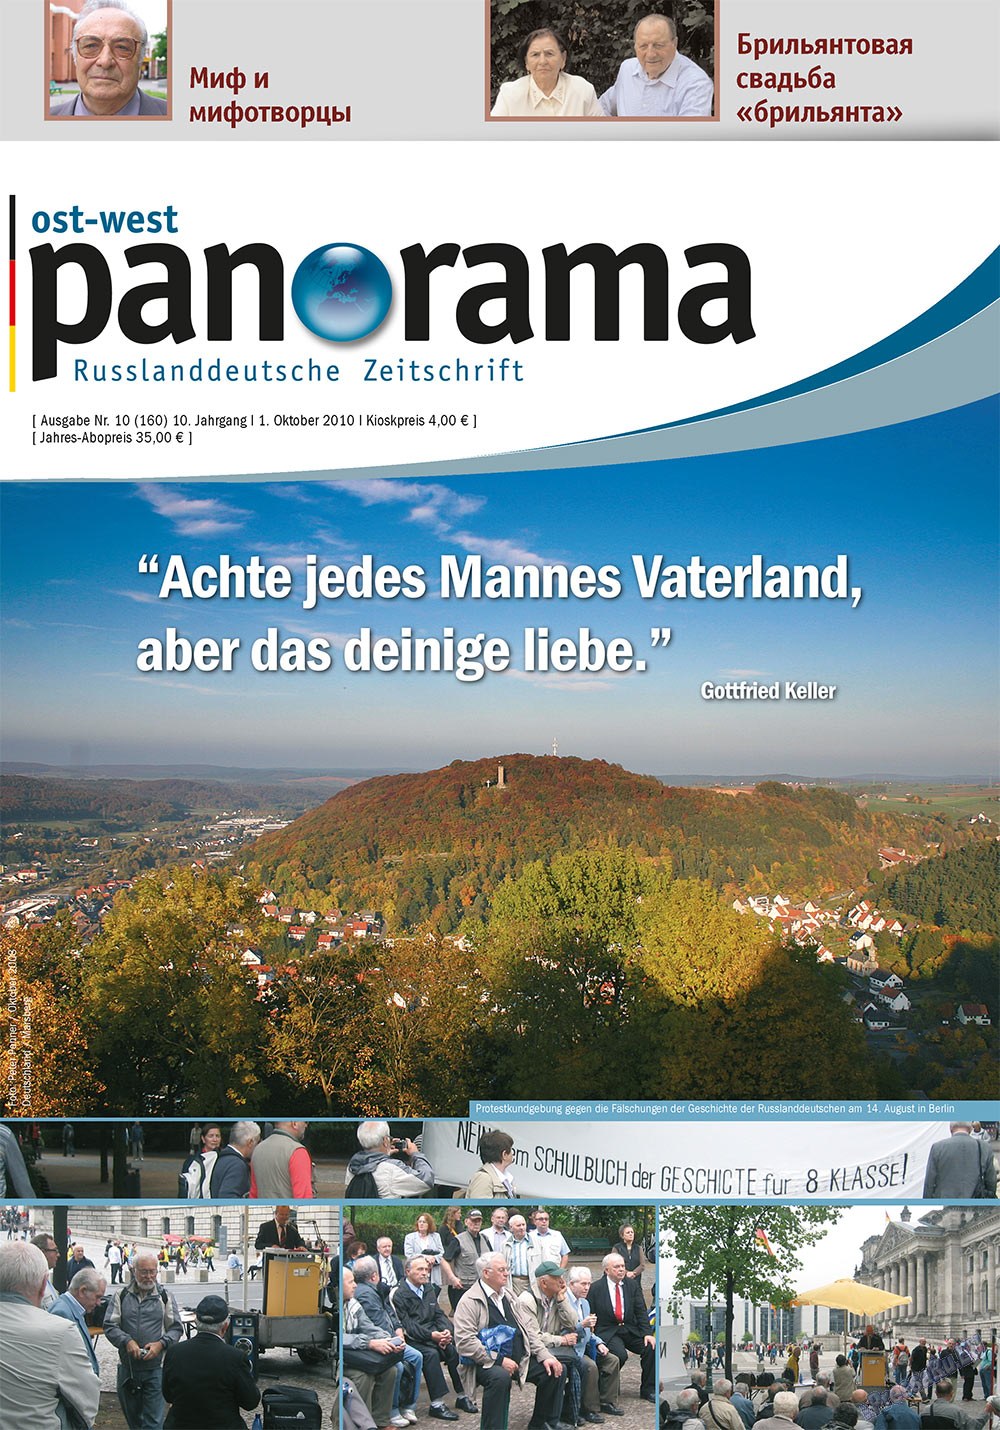 Ost-West Panorama (журнал). 2010 год, номер 10, стр. 1